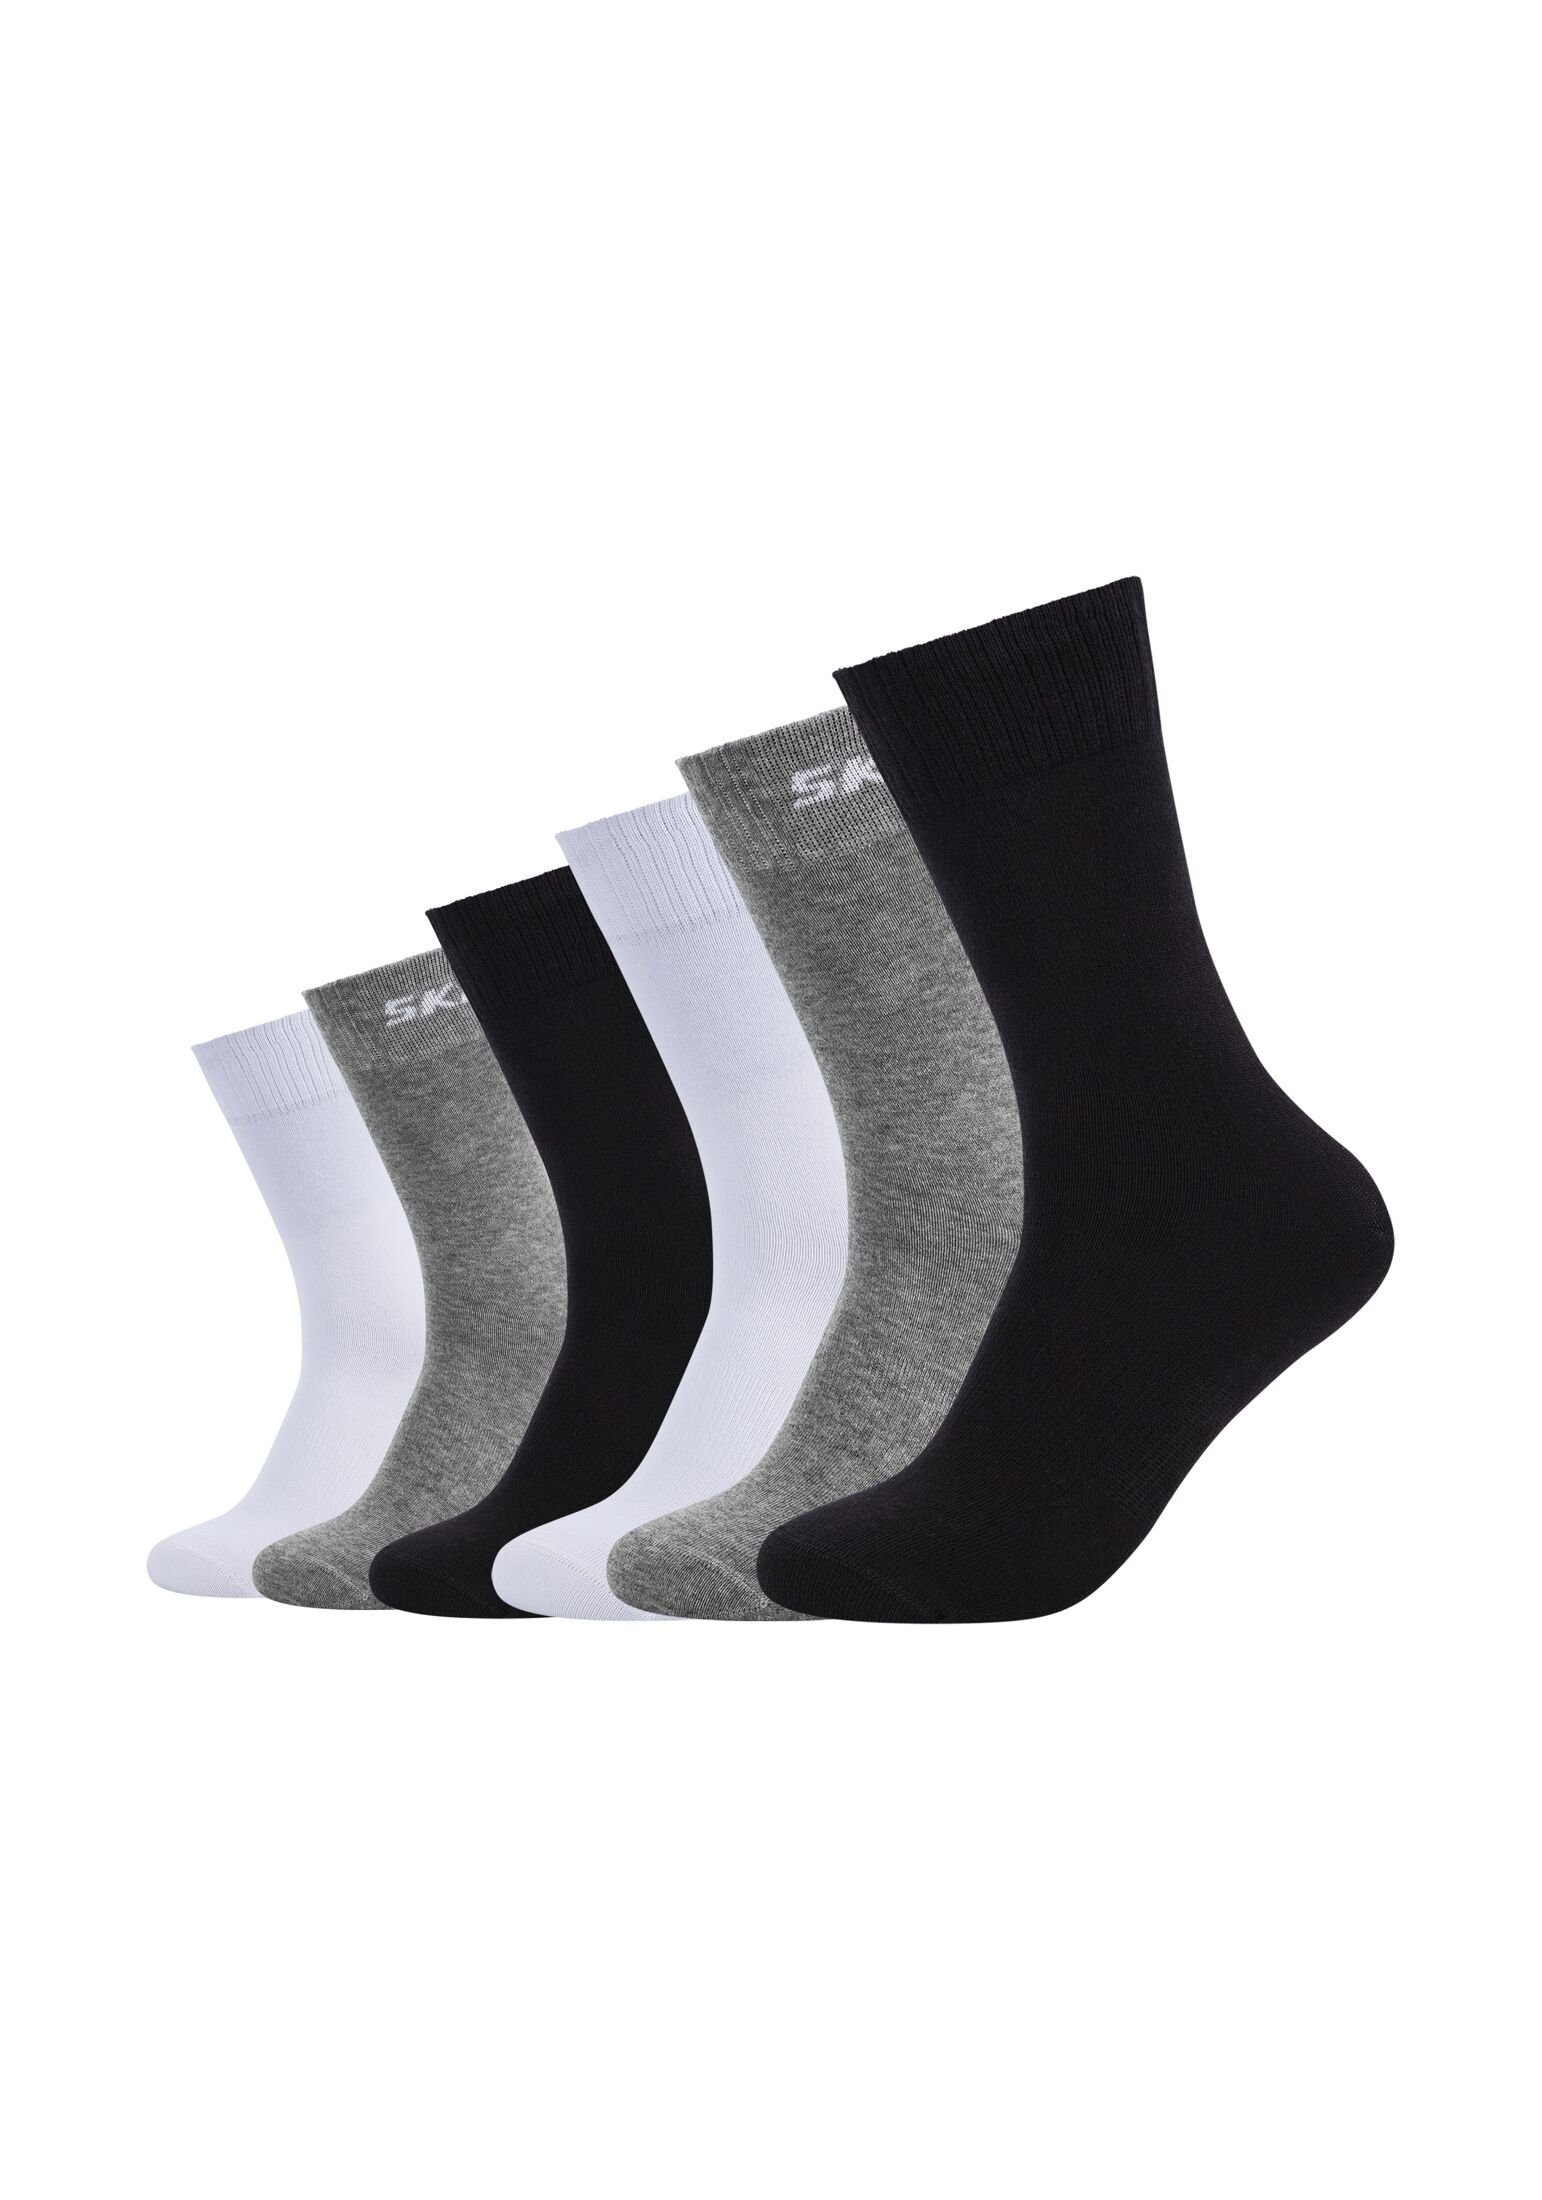 Skechers Socken Socken 6er Pack black/grey mix | 